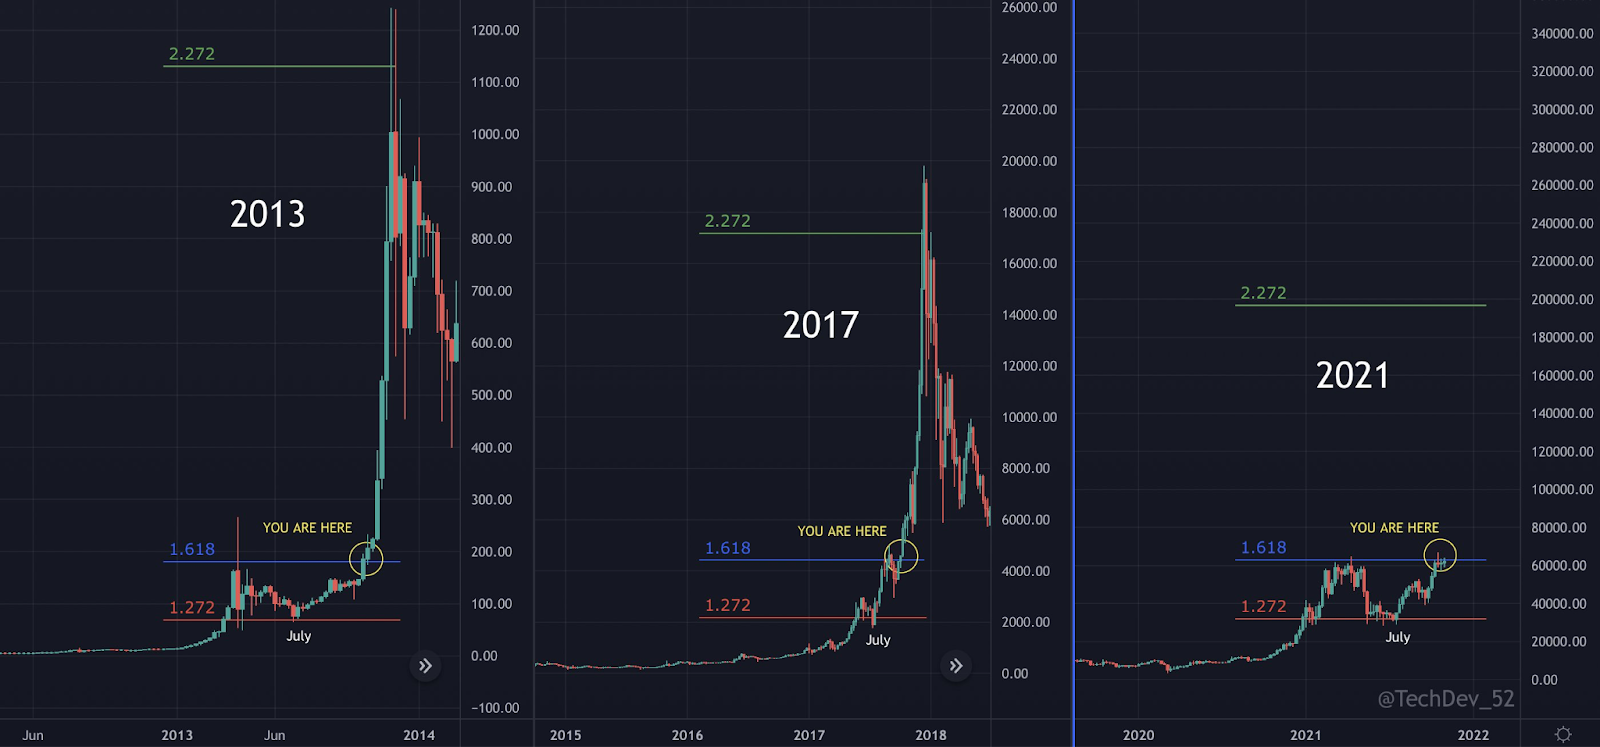 Bitcoin Ready To Go “Parabolic” 2021